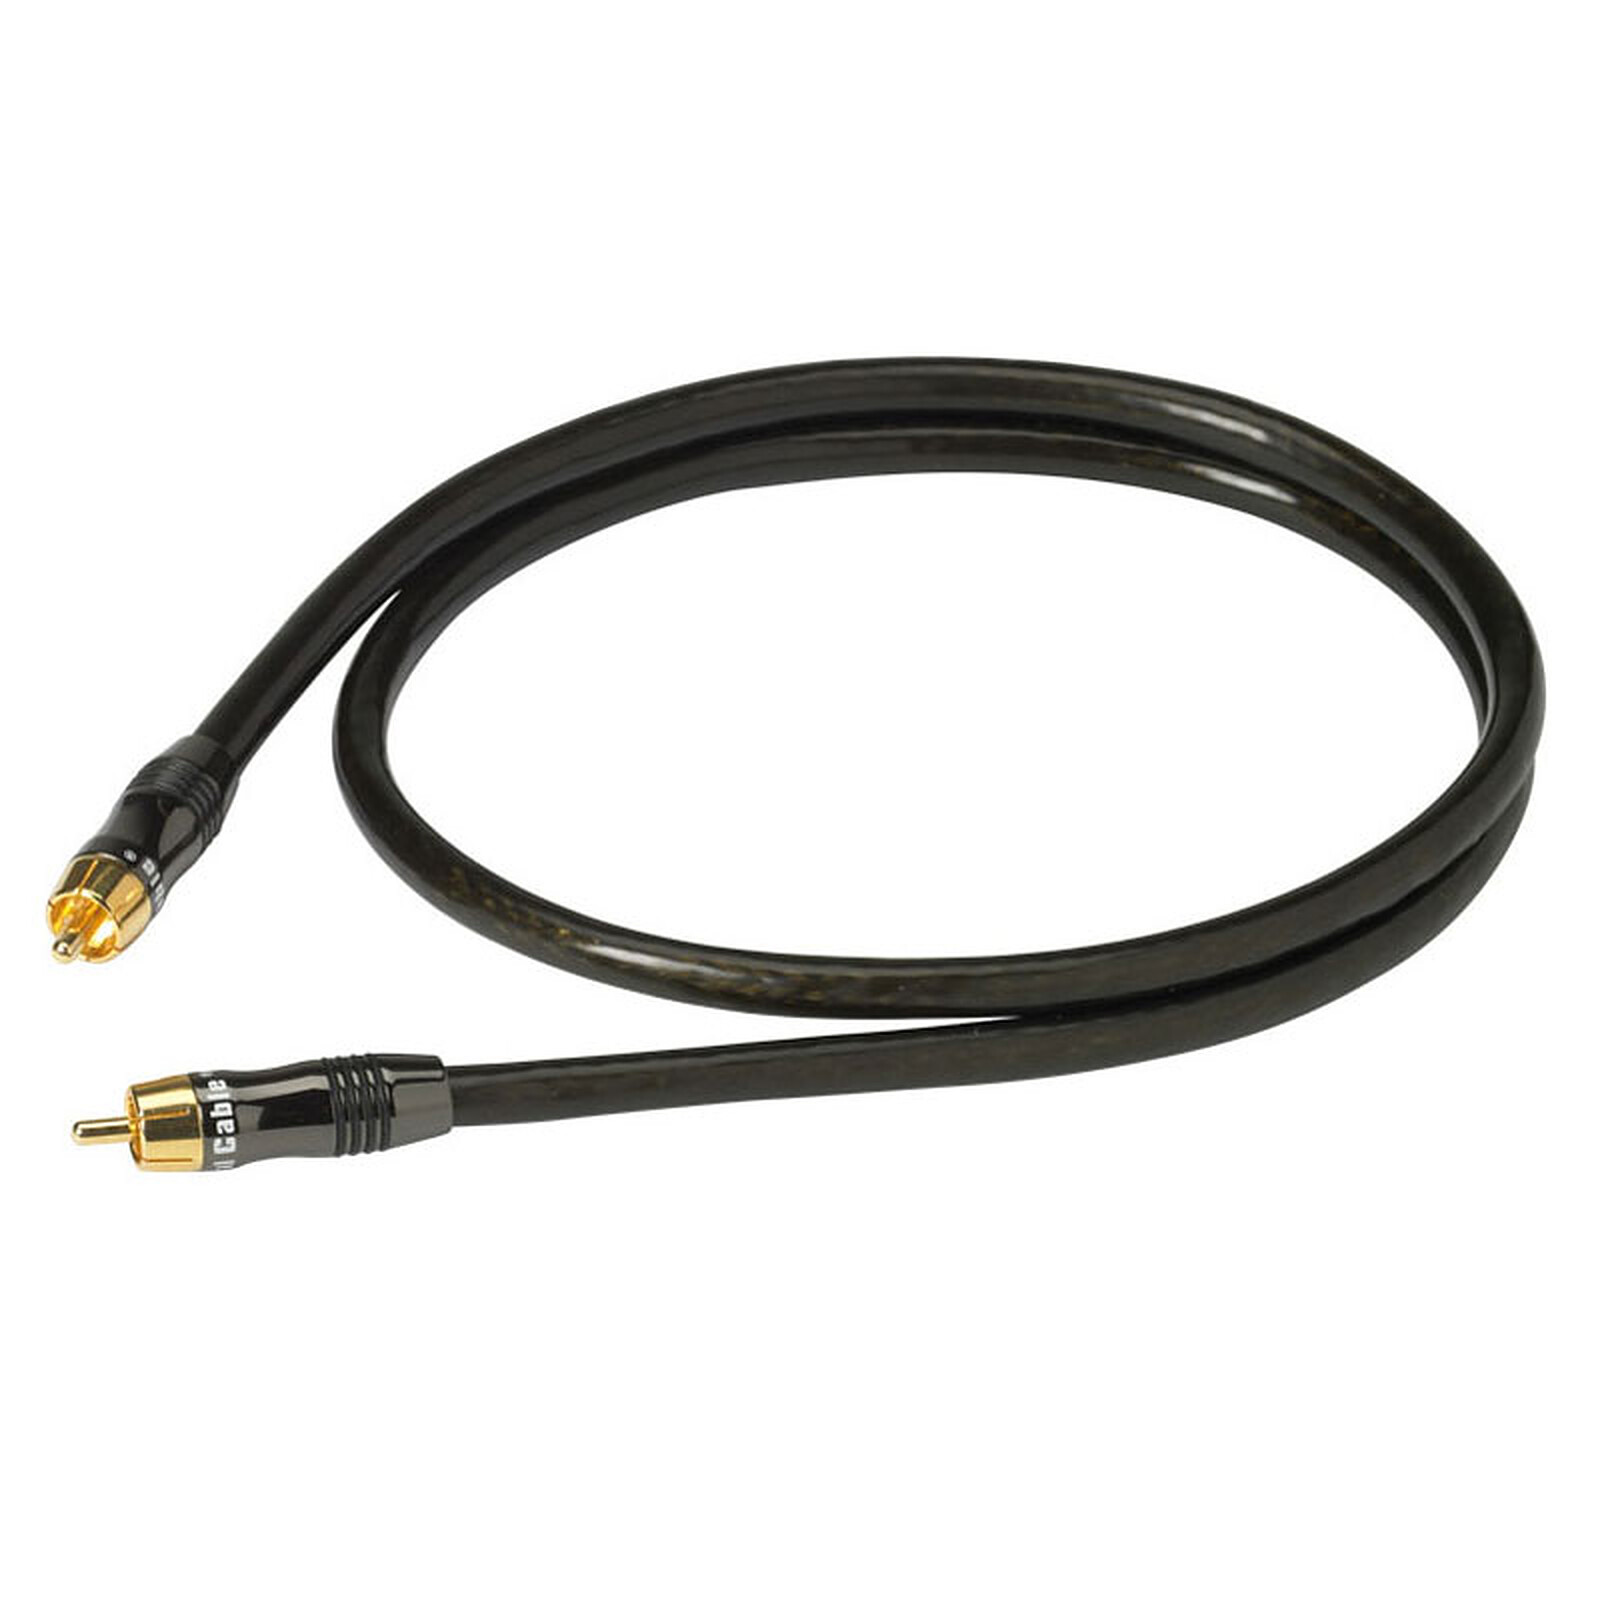 quel cable pour relier 2 subwoofer sur une seule rca» - 30039623 - sur le  forum «Accessoires Audio HomeCinéma» - 1026 - du site